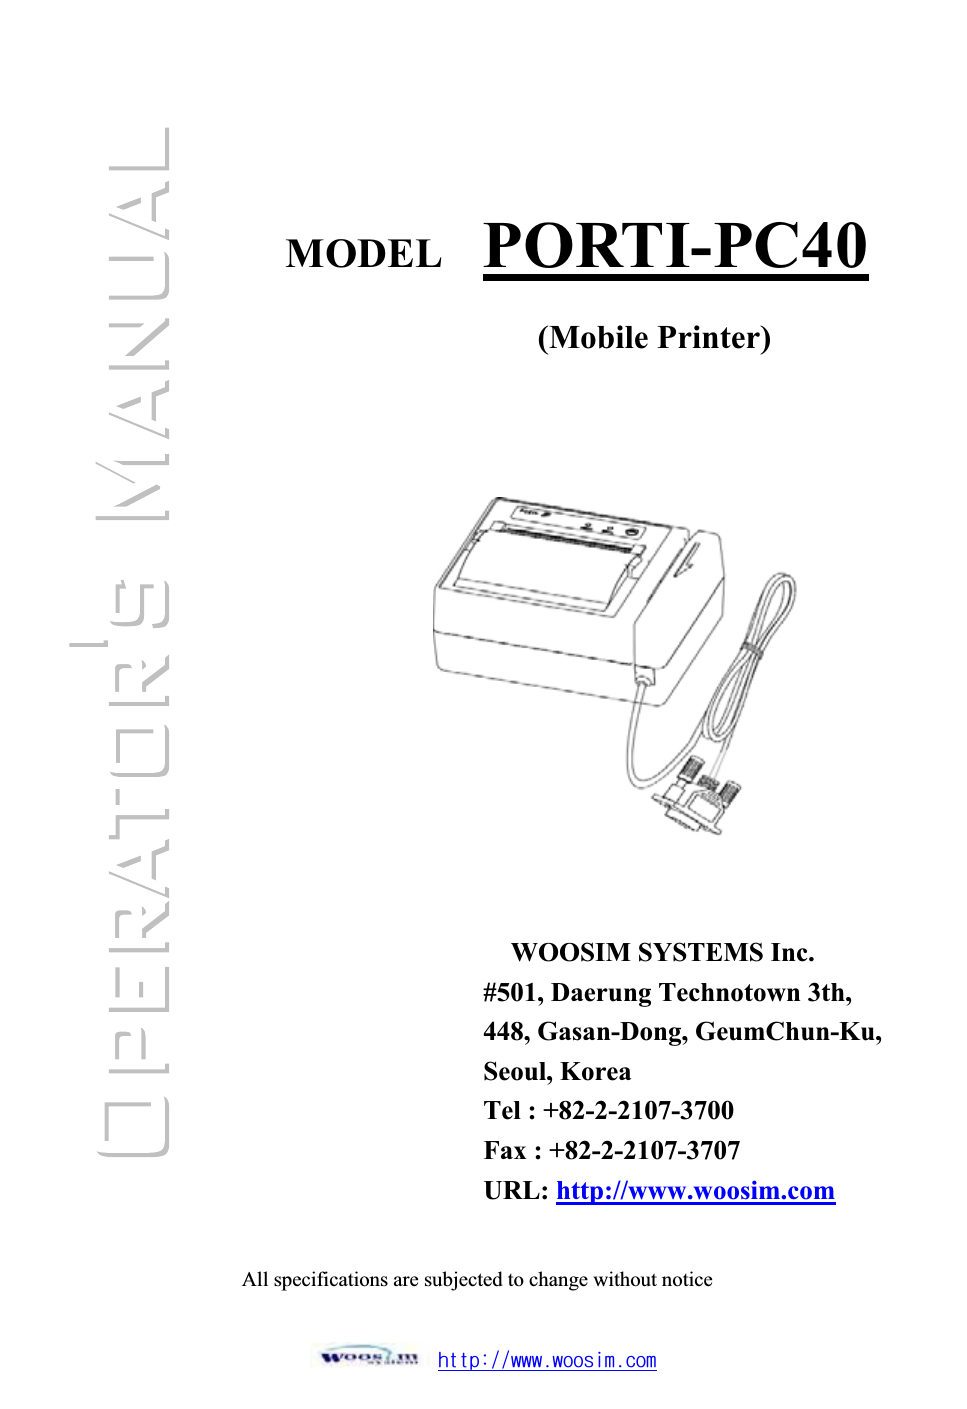 ٻۃۏۏۋڕڊڊےےےډےۊۊێۄۈډھۊۈٻٻٻٻٻٻٻٻٻٻٻٻٻٻٻٻٻٻٻٻٻ͑ٻٻٻٻٻٻٻٻٻٻٻٻٻٻٻٻٻٻٻٻٻٻٻٻٻٻٻMODEL  PORTI-PC40WOOSIM SYSTEMS Inc. #501, Daerung Technotown 3th, 448, Gasan-Dong, GeumChun-Ku, Seoul, Korea Tel : +82-2-2107-3700 Fax : +82-2-2107-3707 URL: http://www.woosim.com(Mobile Printer)All specifications are subjected to change without noticeٻ